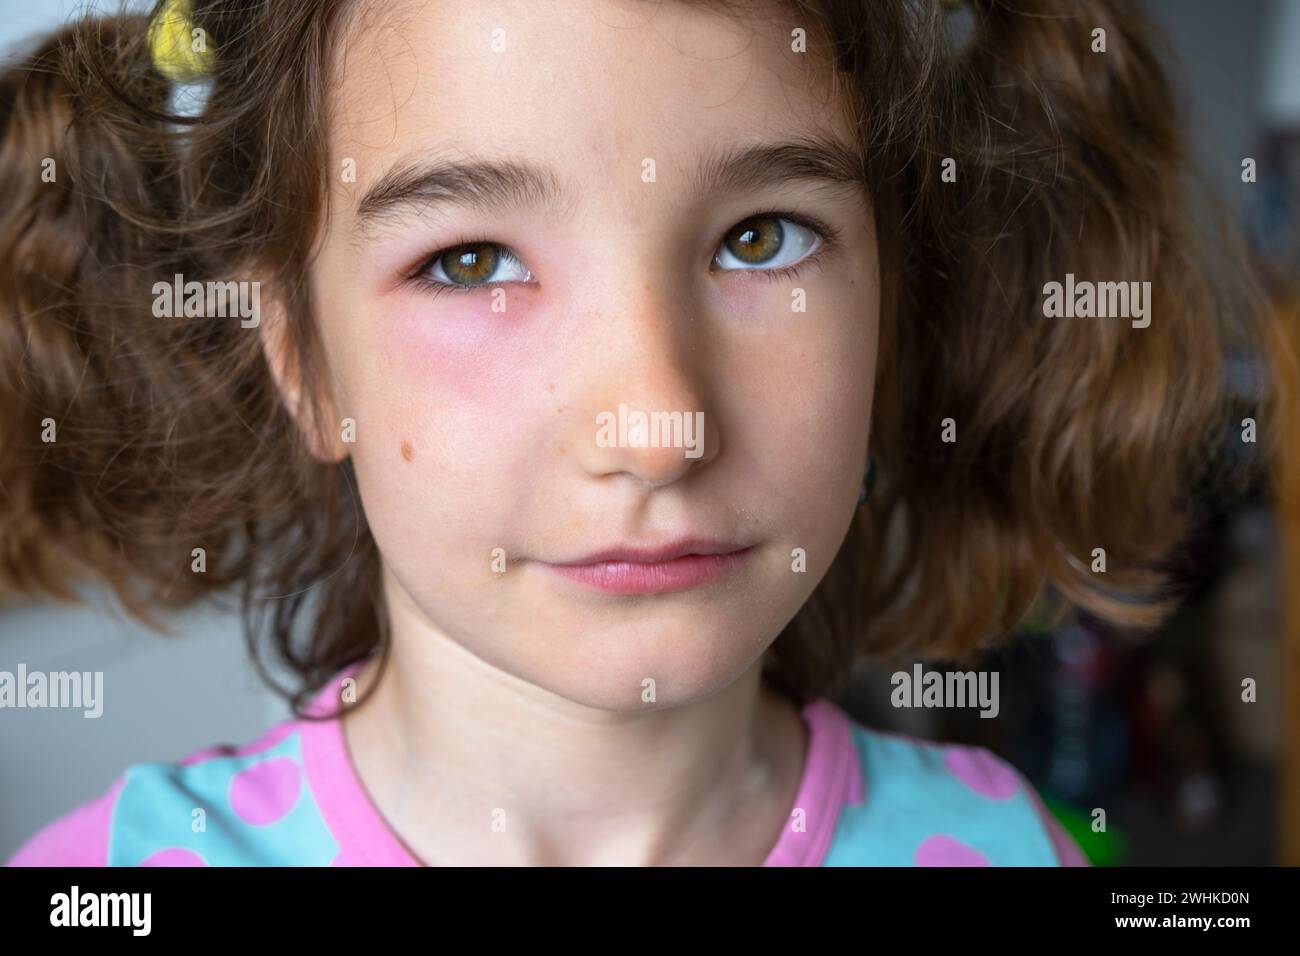 Une paupière gonflée rouge sur le visage d'un enfant en gros plan est une allergie à une piqûre d'insecte. Réaction allergique aux insectes suceurs de sang Banque D'Images